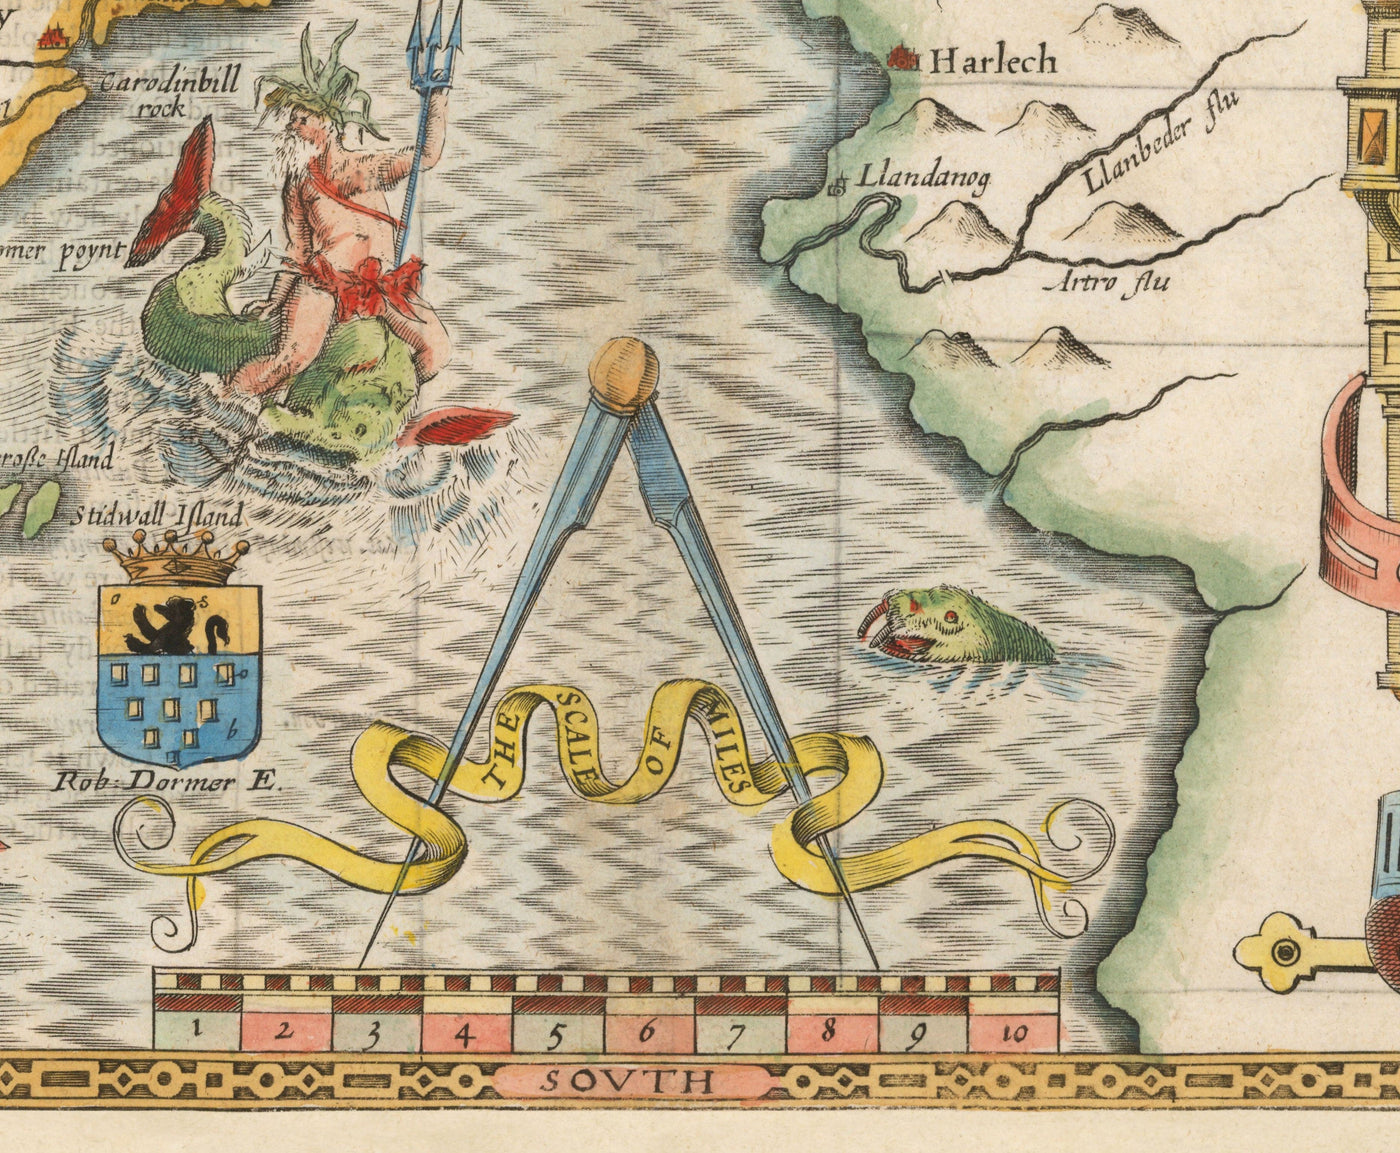 Ancienne carte du Pays de Galles Caernarfonshire, 1611 par John Speed - Caernarfon, Snowdon, Gwynedd, Bangor, Conwy, Llandudno